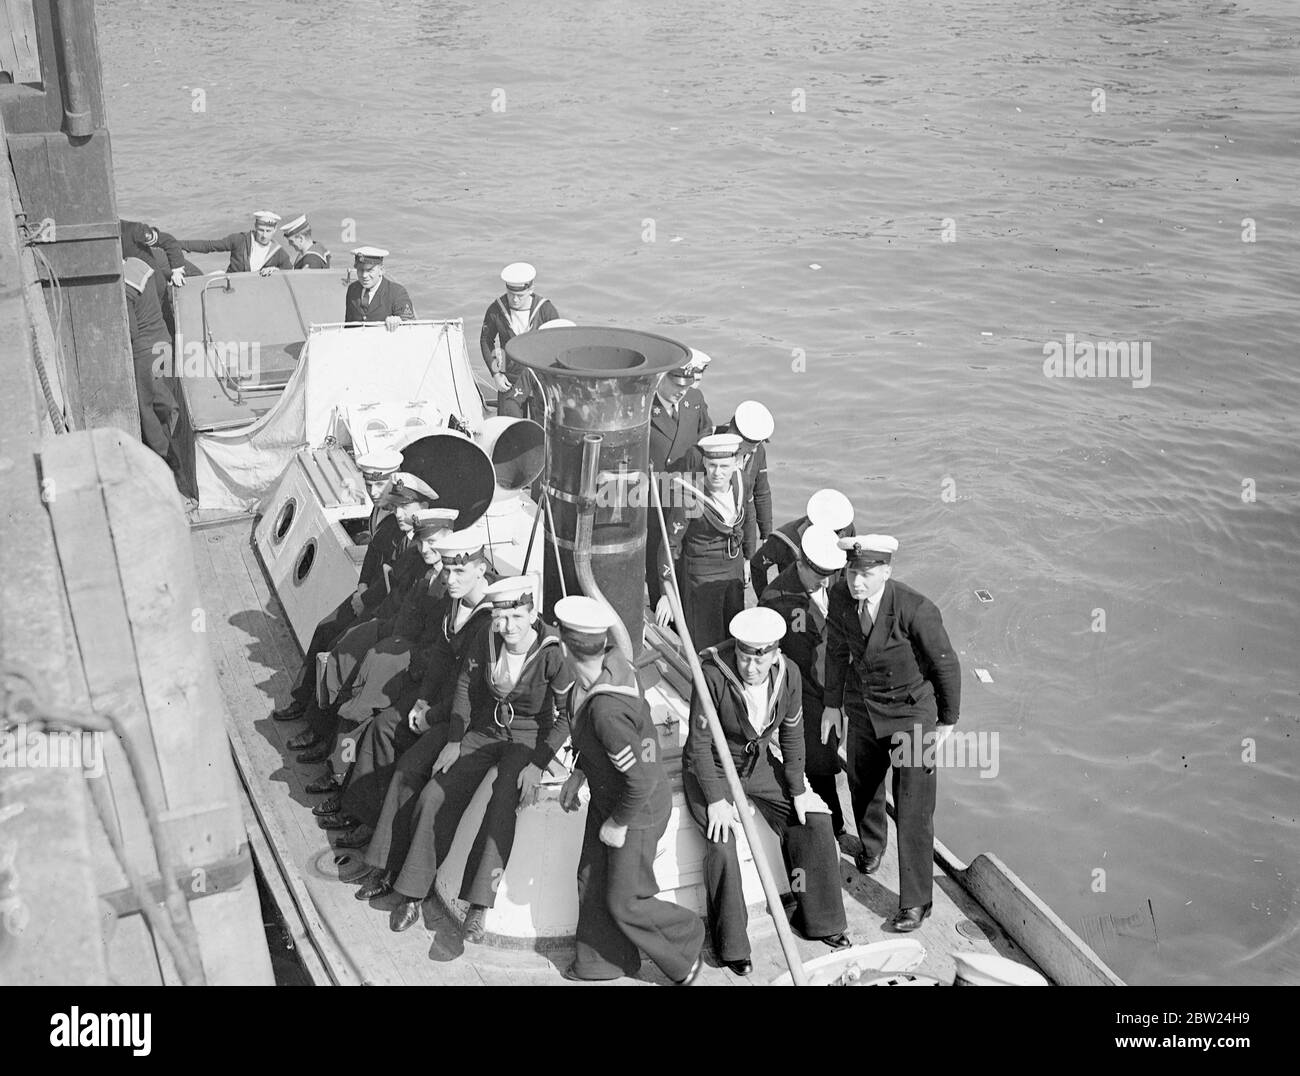 L'amirauté britannique a pris des mesures rapides en raison de la crise entre Sudètes, Allemands et Tchéquie qui devrait atteindre un point culminant ce week-end. Bien que la majeure partie de la flotte de la maison soit concentrée à Invergordon, les flottilles sous-marines sont debout par Portland et la première flottille de déminage est portée à plein complément tandis que quatre destroyers en minelant doivent être placés en pleine commission de la réserve. Photos: Marins venant à terre du navire de dépôt HMS Titania. 11 septembre 1938 Banque D'Images